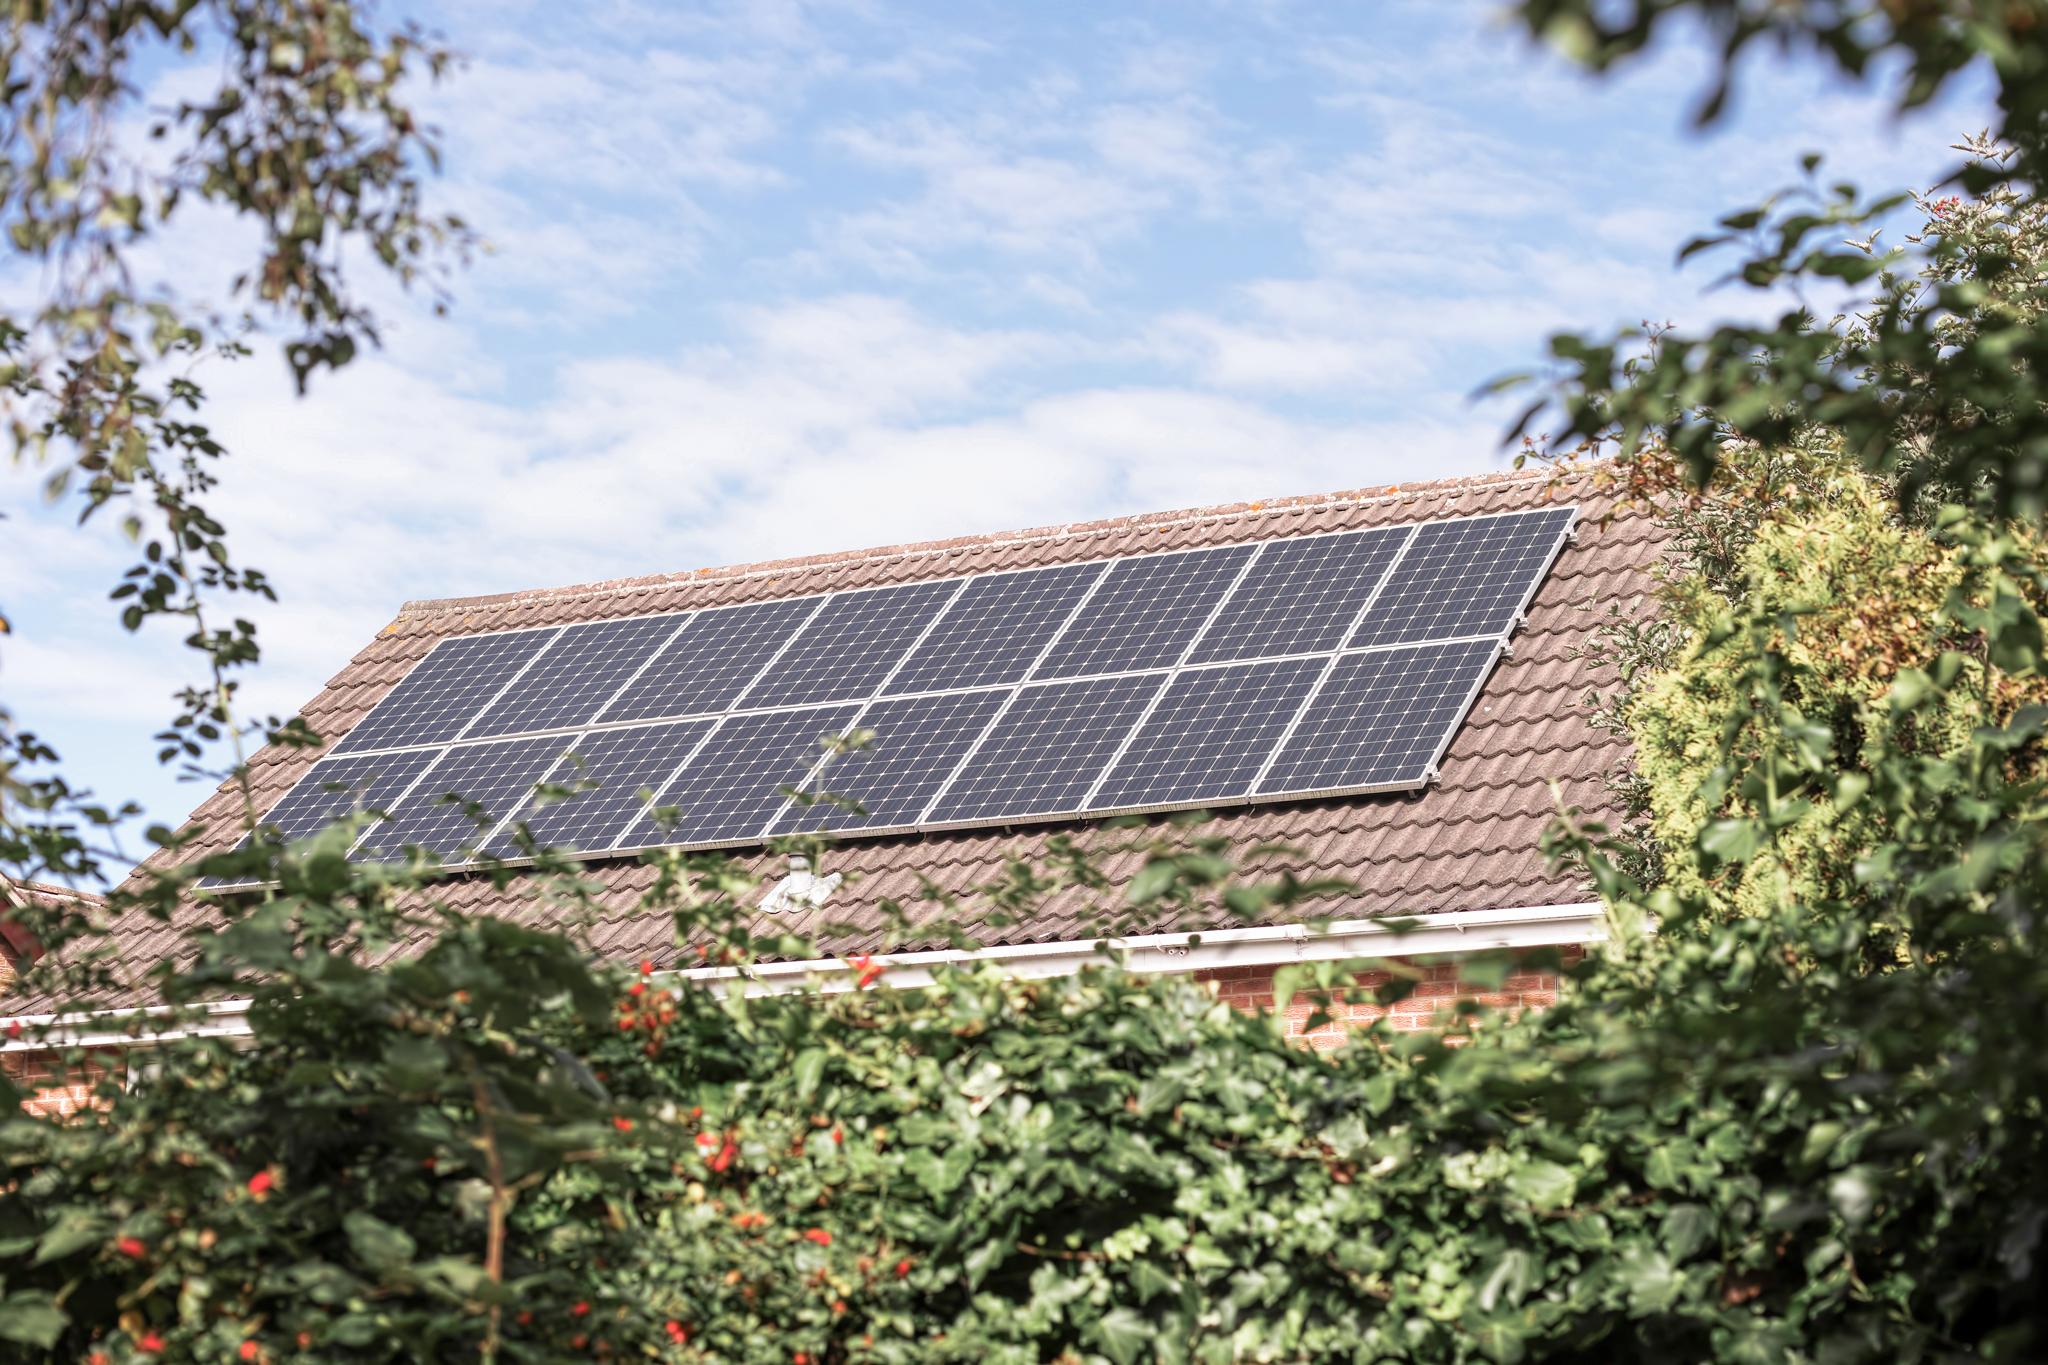 Dach eines Einfamilienhauses mit PV-Anlage – Der Solarmodule Vergleich